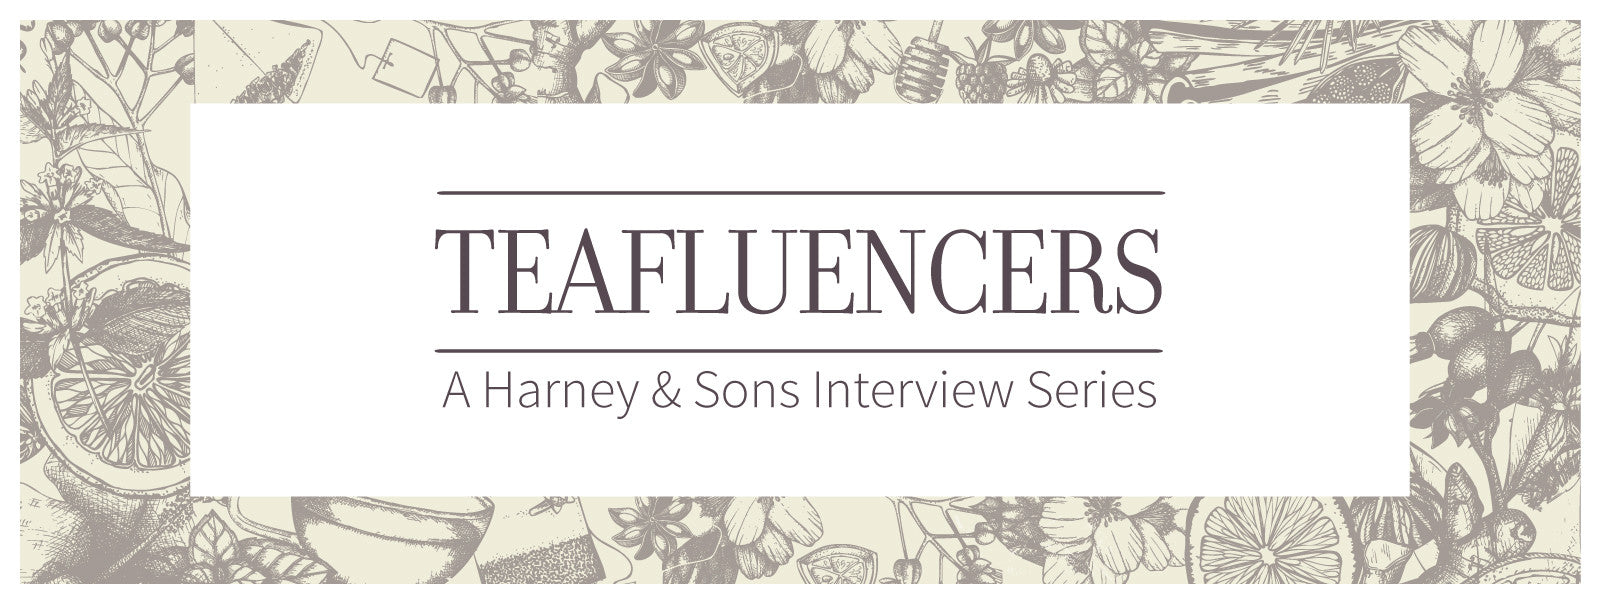 Harney & Sons Teafluencer Interview: Stacie Grissom